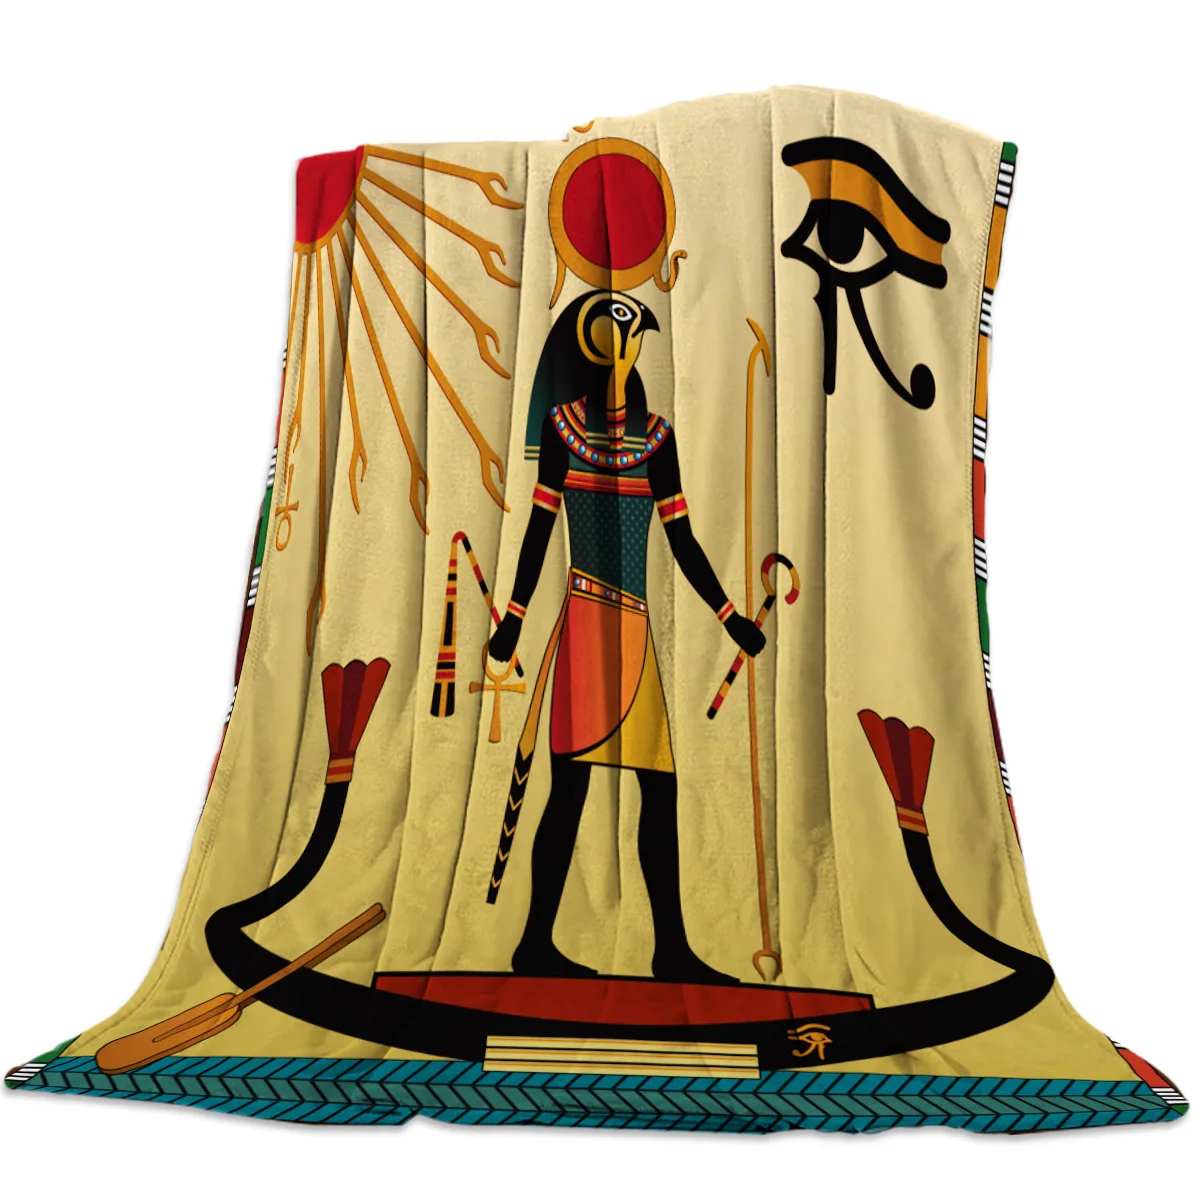 

Египет, Hieroglyph, древняя религия, солнцезащитное одеяло, мягкое теплое одеяло из микрофибры, фланелевое одеяло